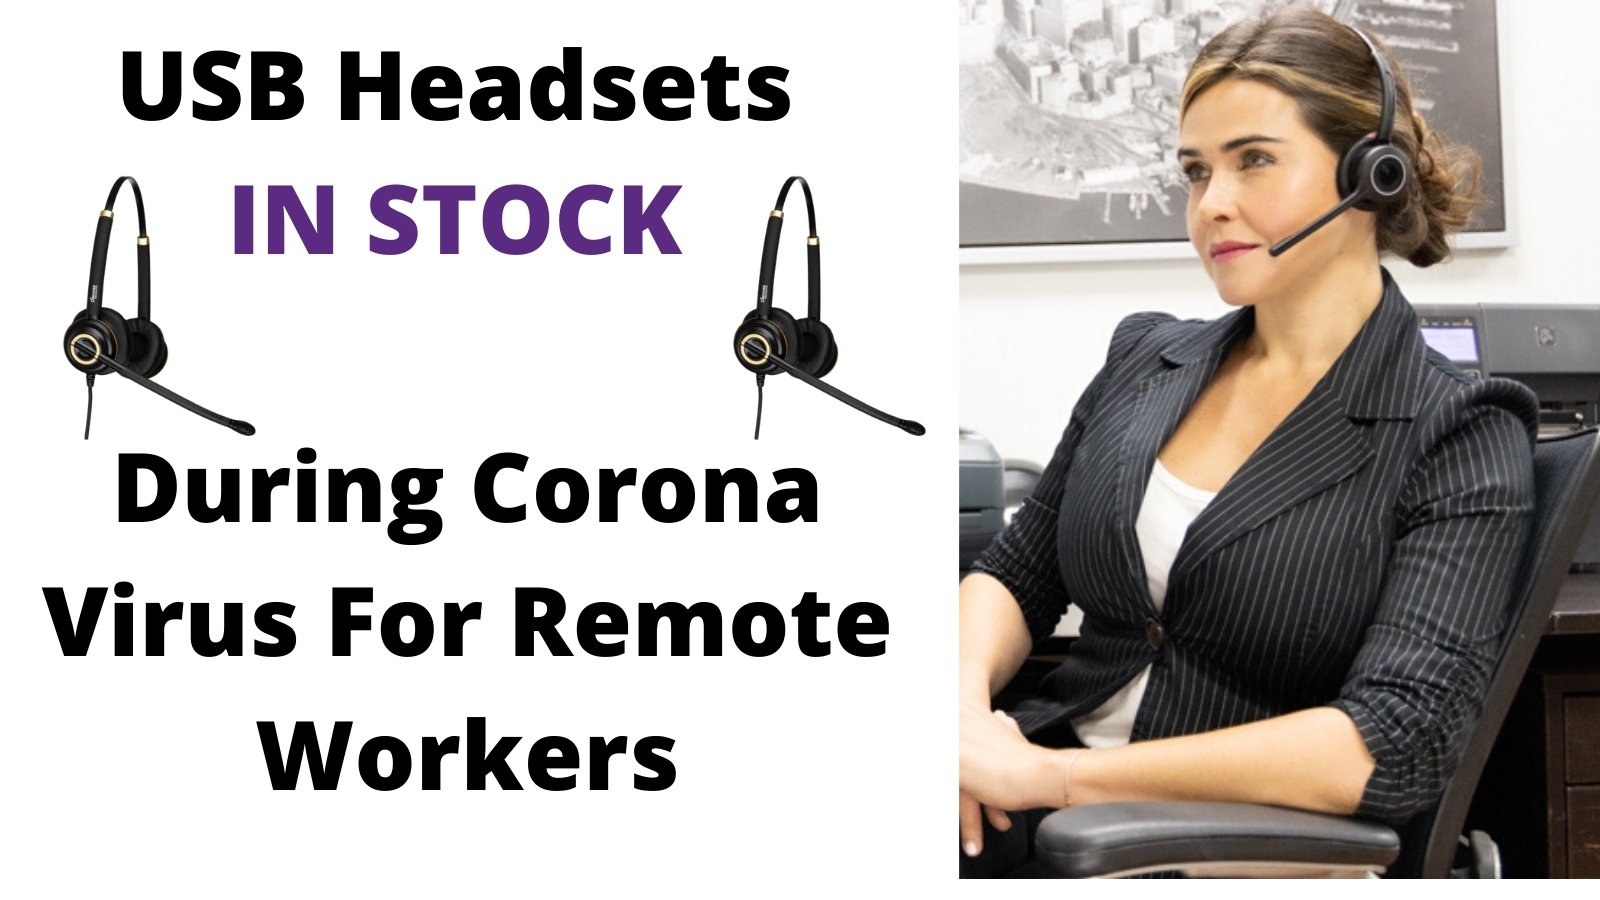 USB Headsets For Remote Work In Stock (Coronavirus) - Headset Advisor